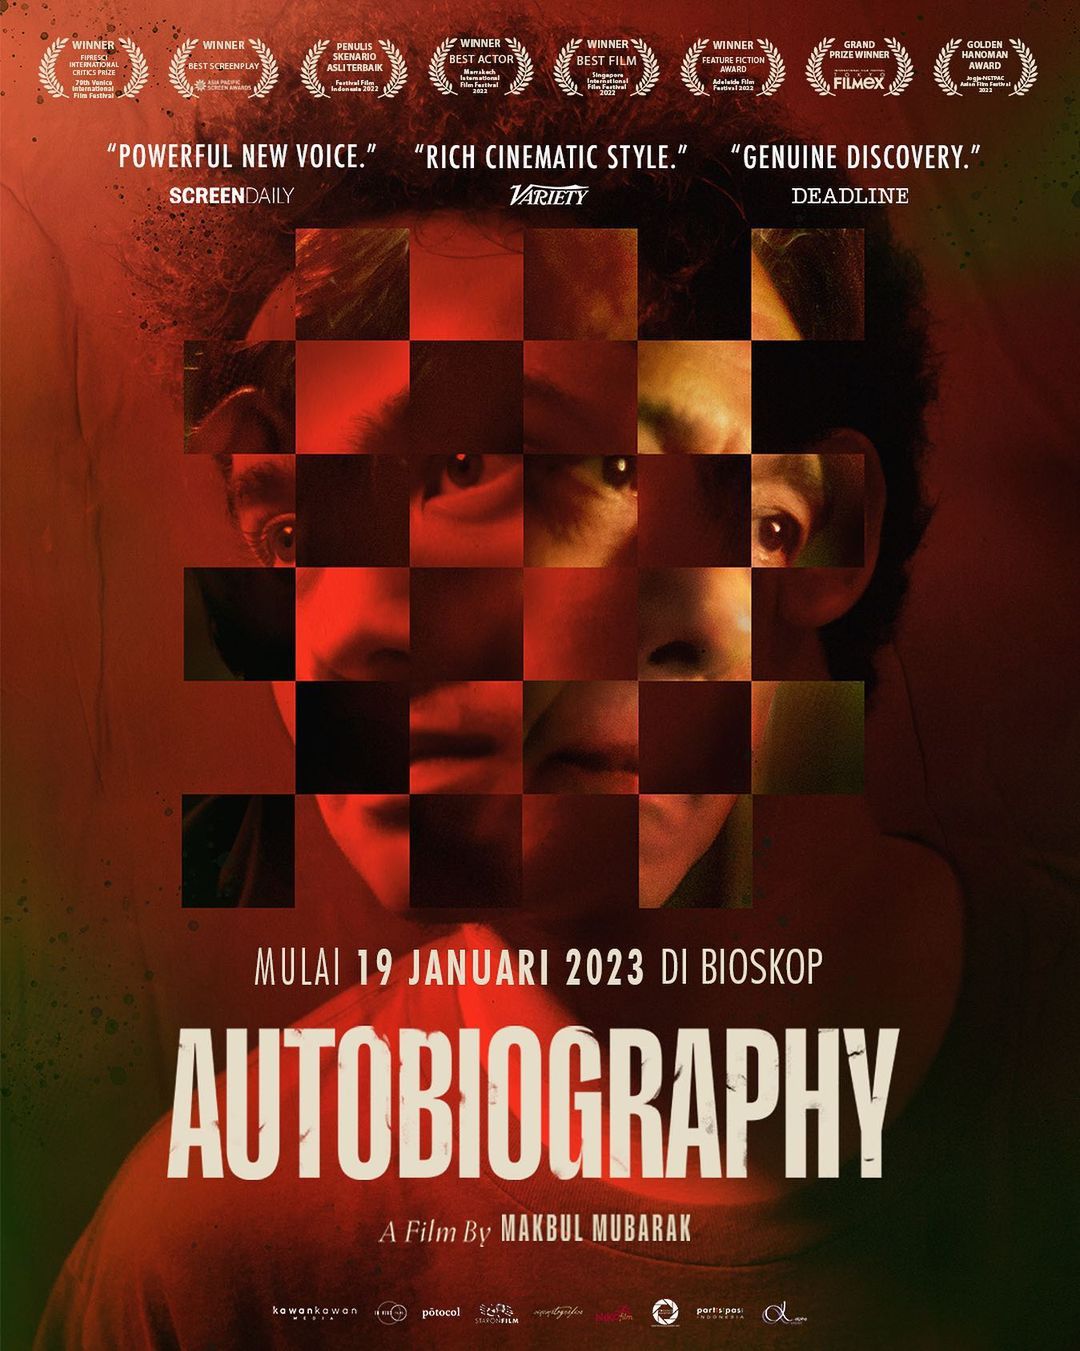 Film Autobiography tembus Festival Film Venice 2022